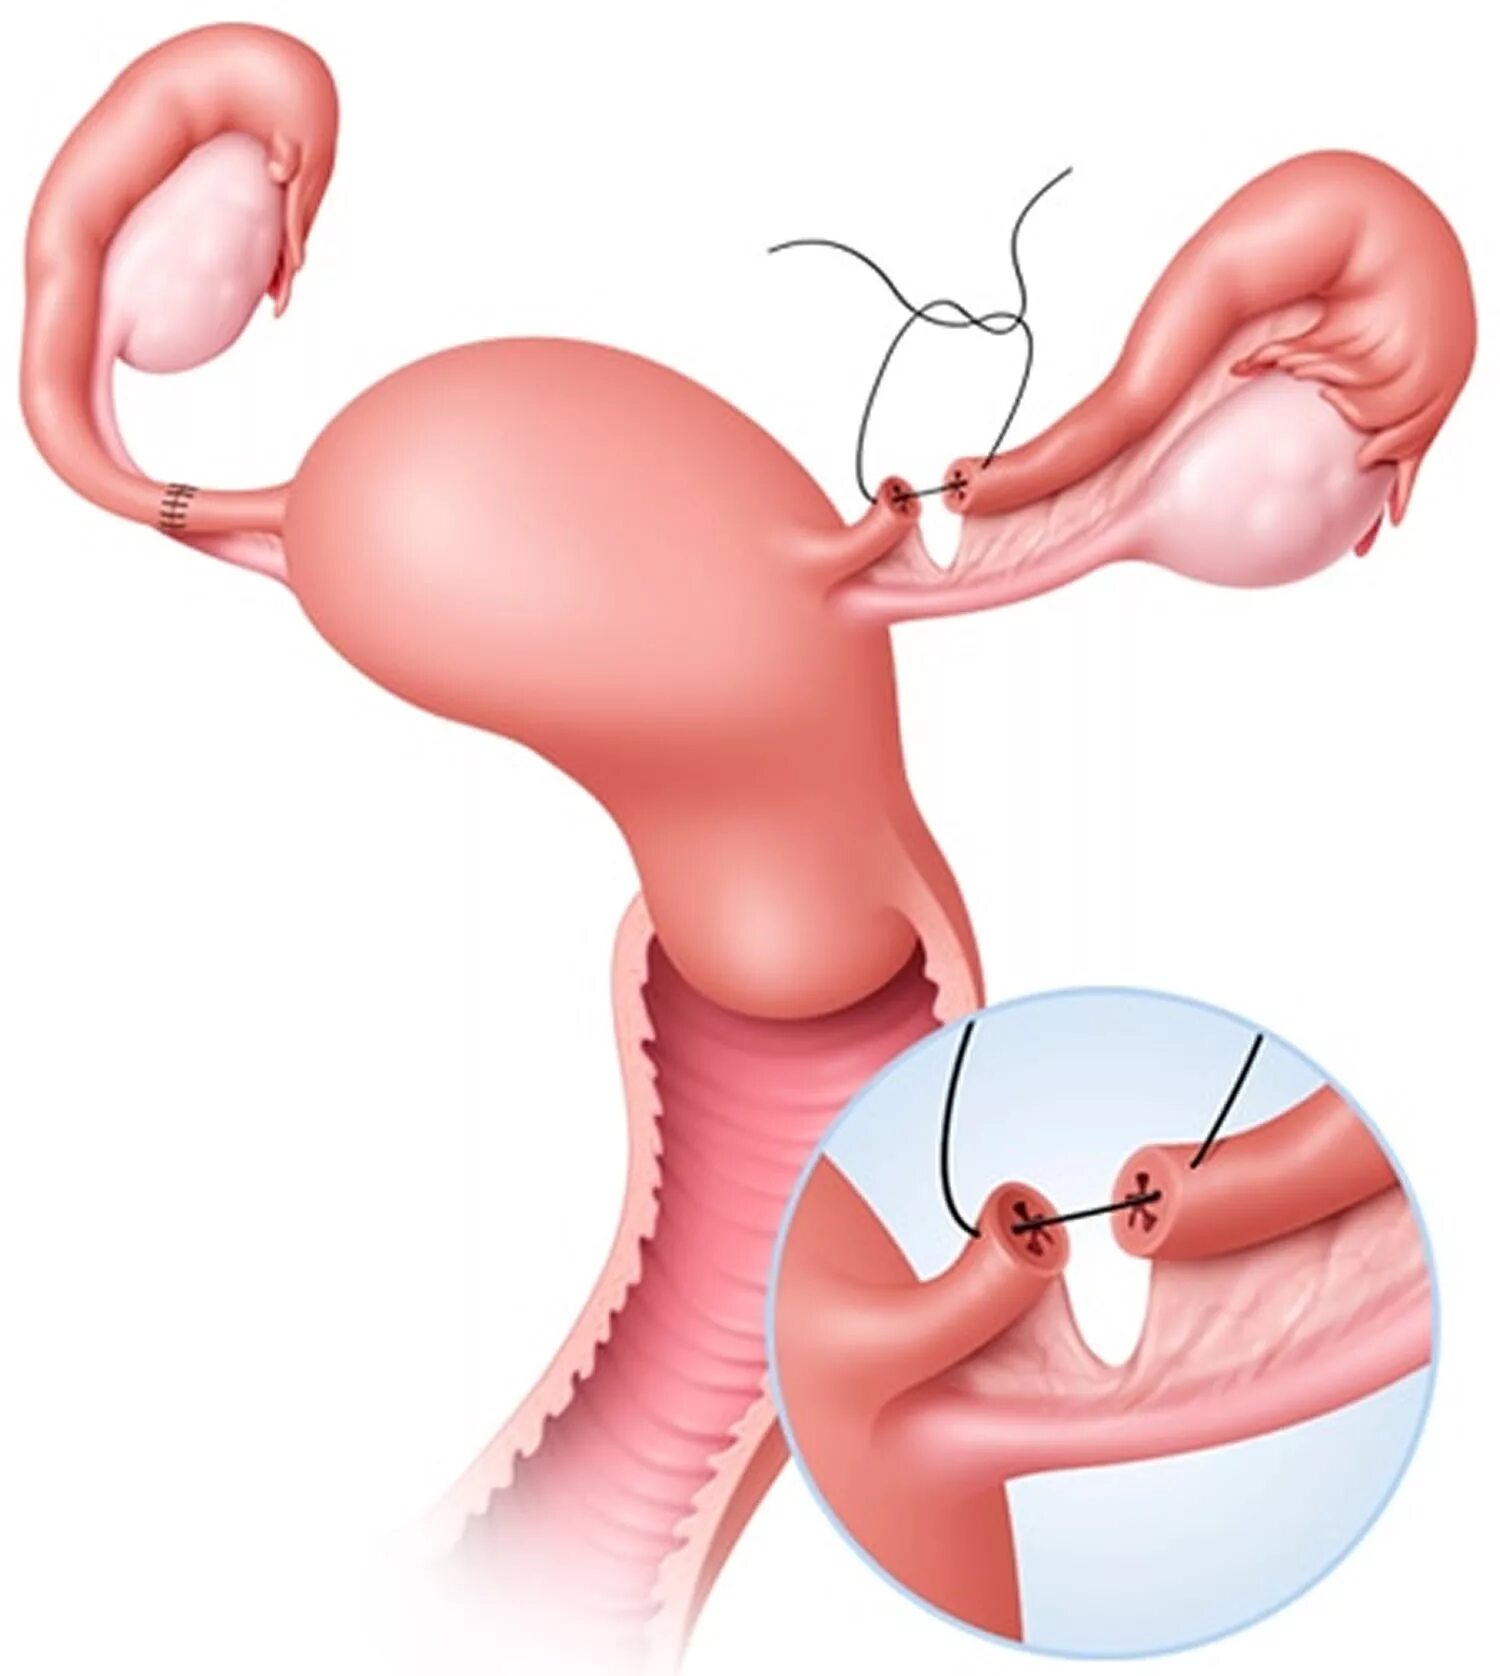 Хирургическая стерилизация маточных труб. Женская стерилизация (перевязка маточных труб). Лапароскопическая перевязка маточных труб. Реанастомоз маточных труб. Удаление матки гинеколог